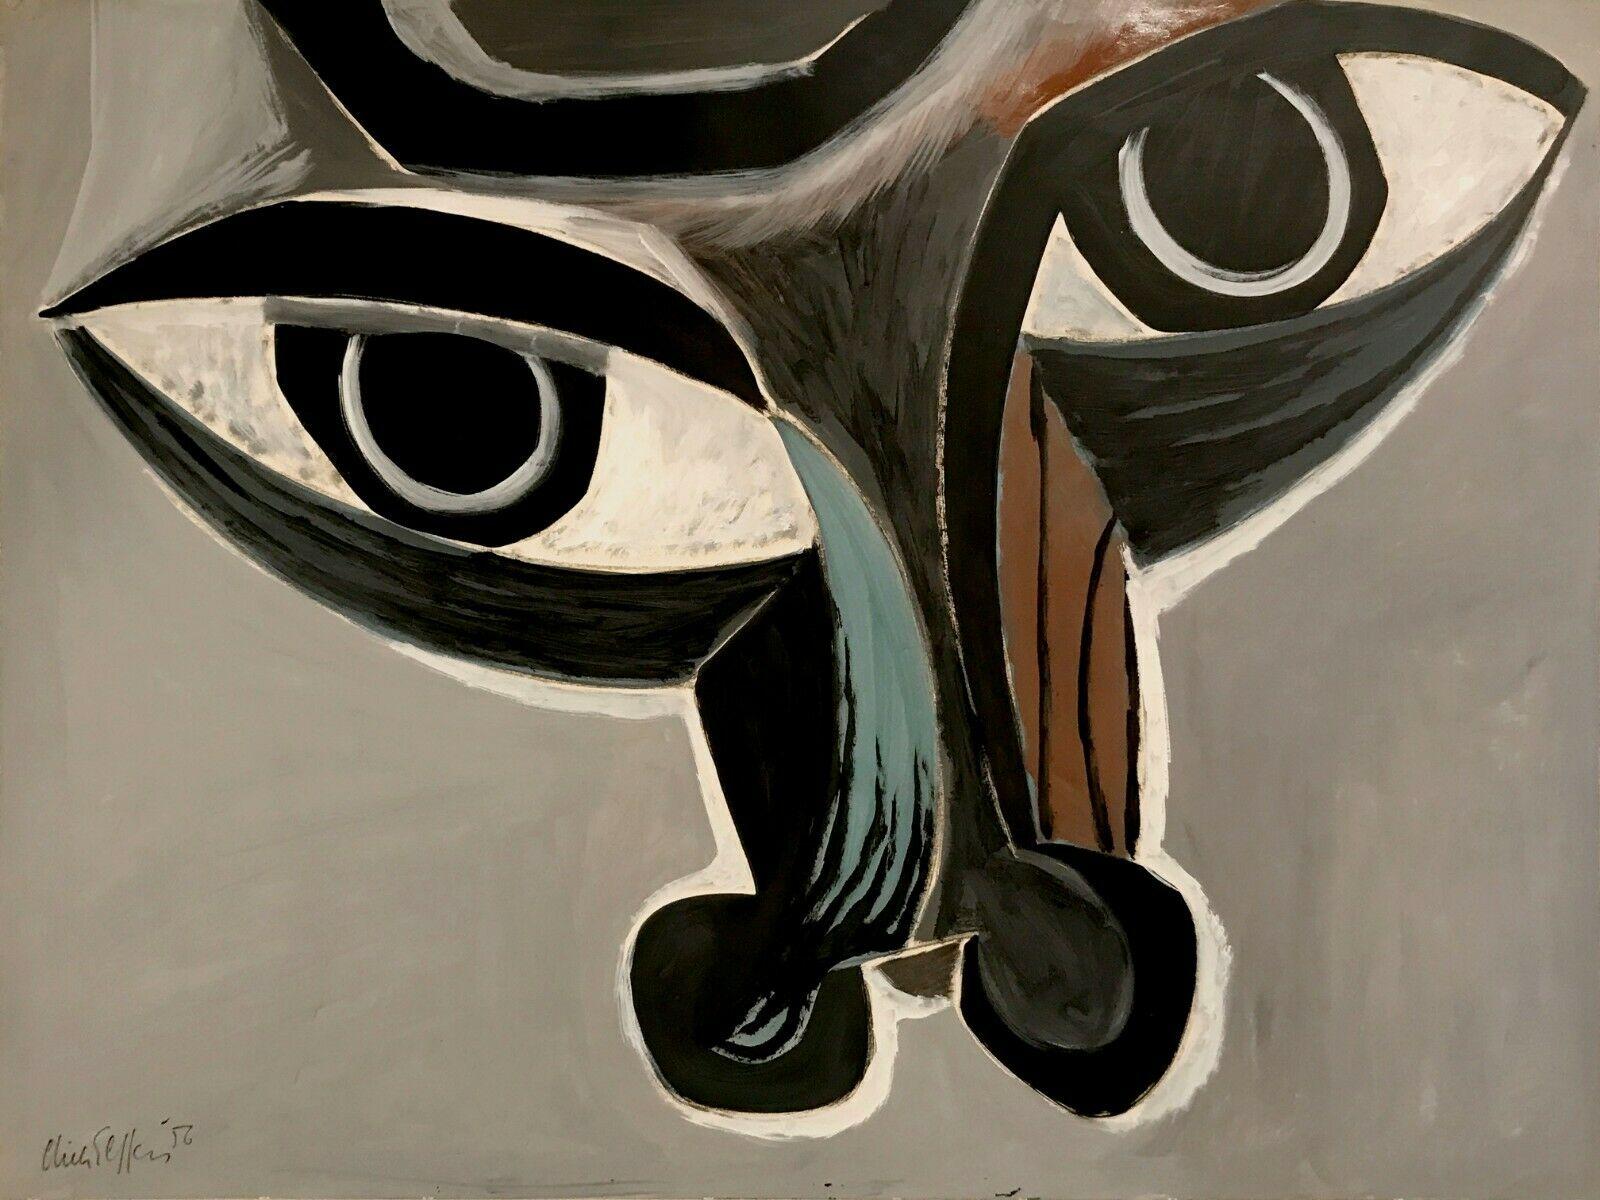 Une grande et puissante peinture figurative représentant un taureau par Dick Effers (1910-1991), datée de 1956, Pays-Bas. Cette gouache sur papier marouflé sur toile est un portrait de taureau rappelant les tauromachies de Picasso. Ses lignes